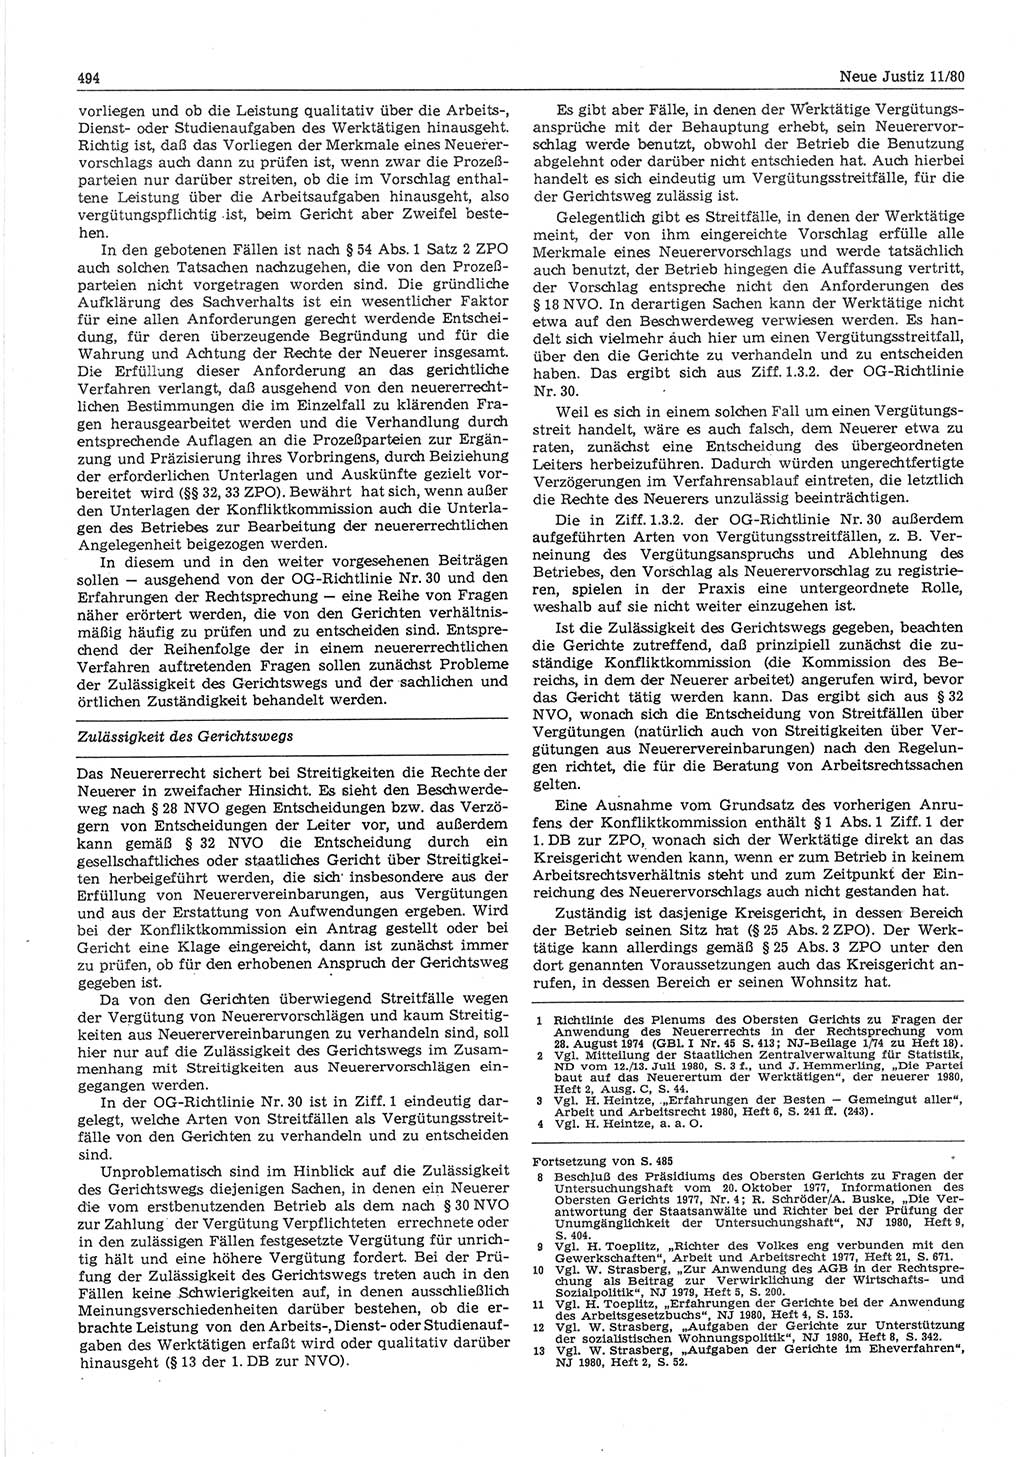 Neue Justiz (NJ), Zeitschrift für sozialistisches Recht und Gesetzlichkeit [Deutsche Demokratische Republik (DDR)], 34. Jahrgang 1980, Seite 494 (NJ DDR 1980, S. 494)